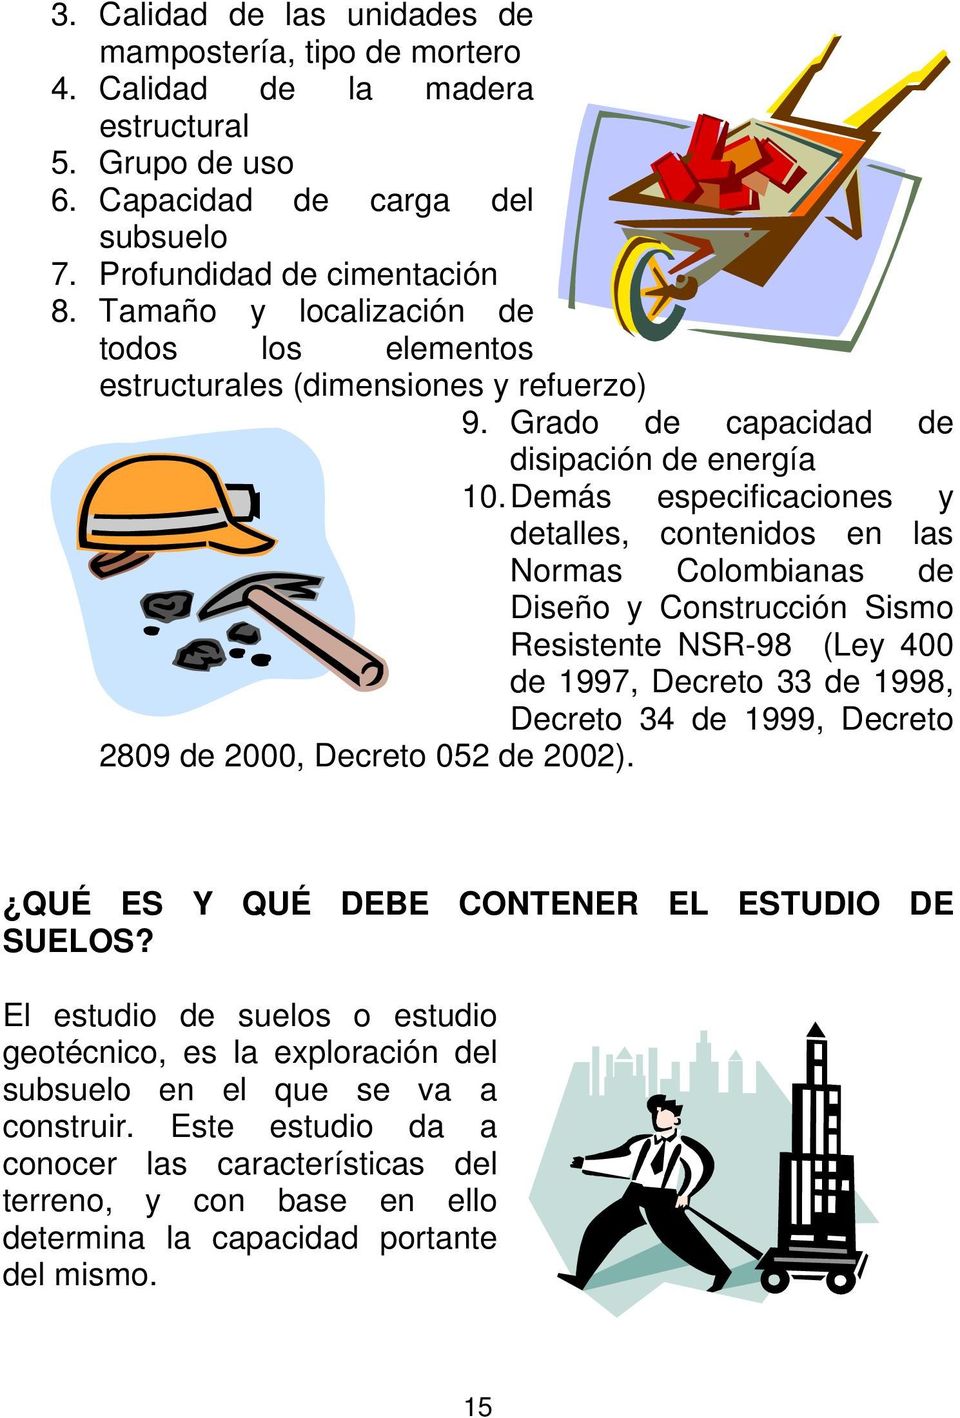 Demás especificaciones y detalles, contenidos en las Normas Colombianas de Diseño y Construcción Sismo Resistente NSR-98 (Ley 400 de 1997, Decreto 33 de 1998, Decreto 34 de 1999, Decreto 2809 de